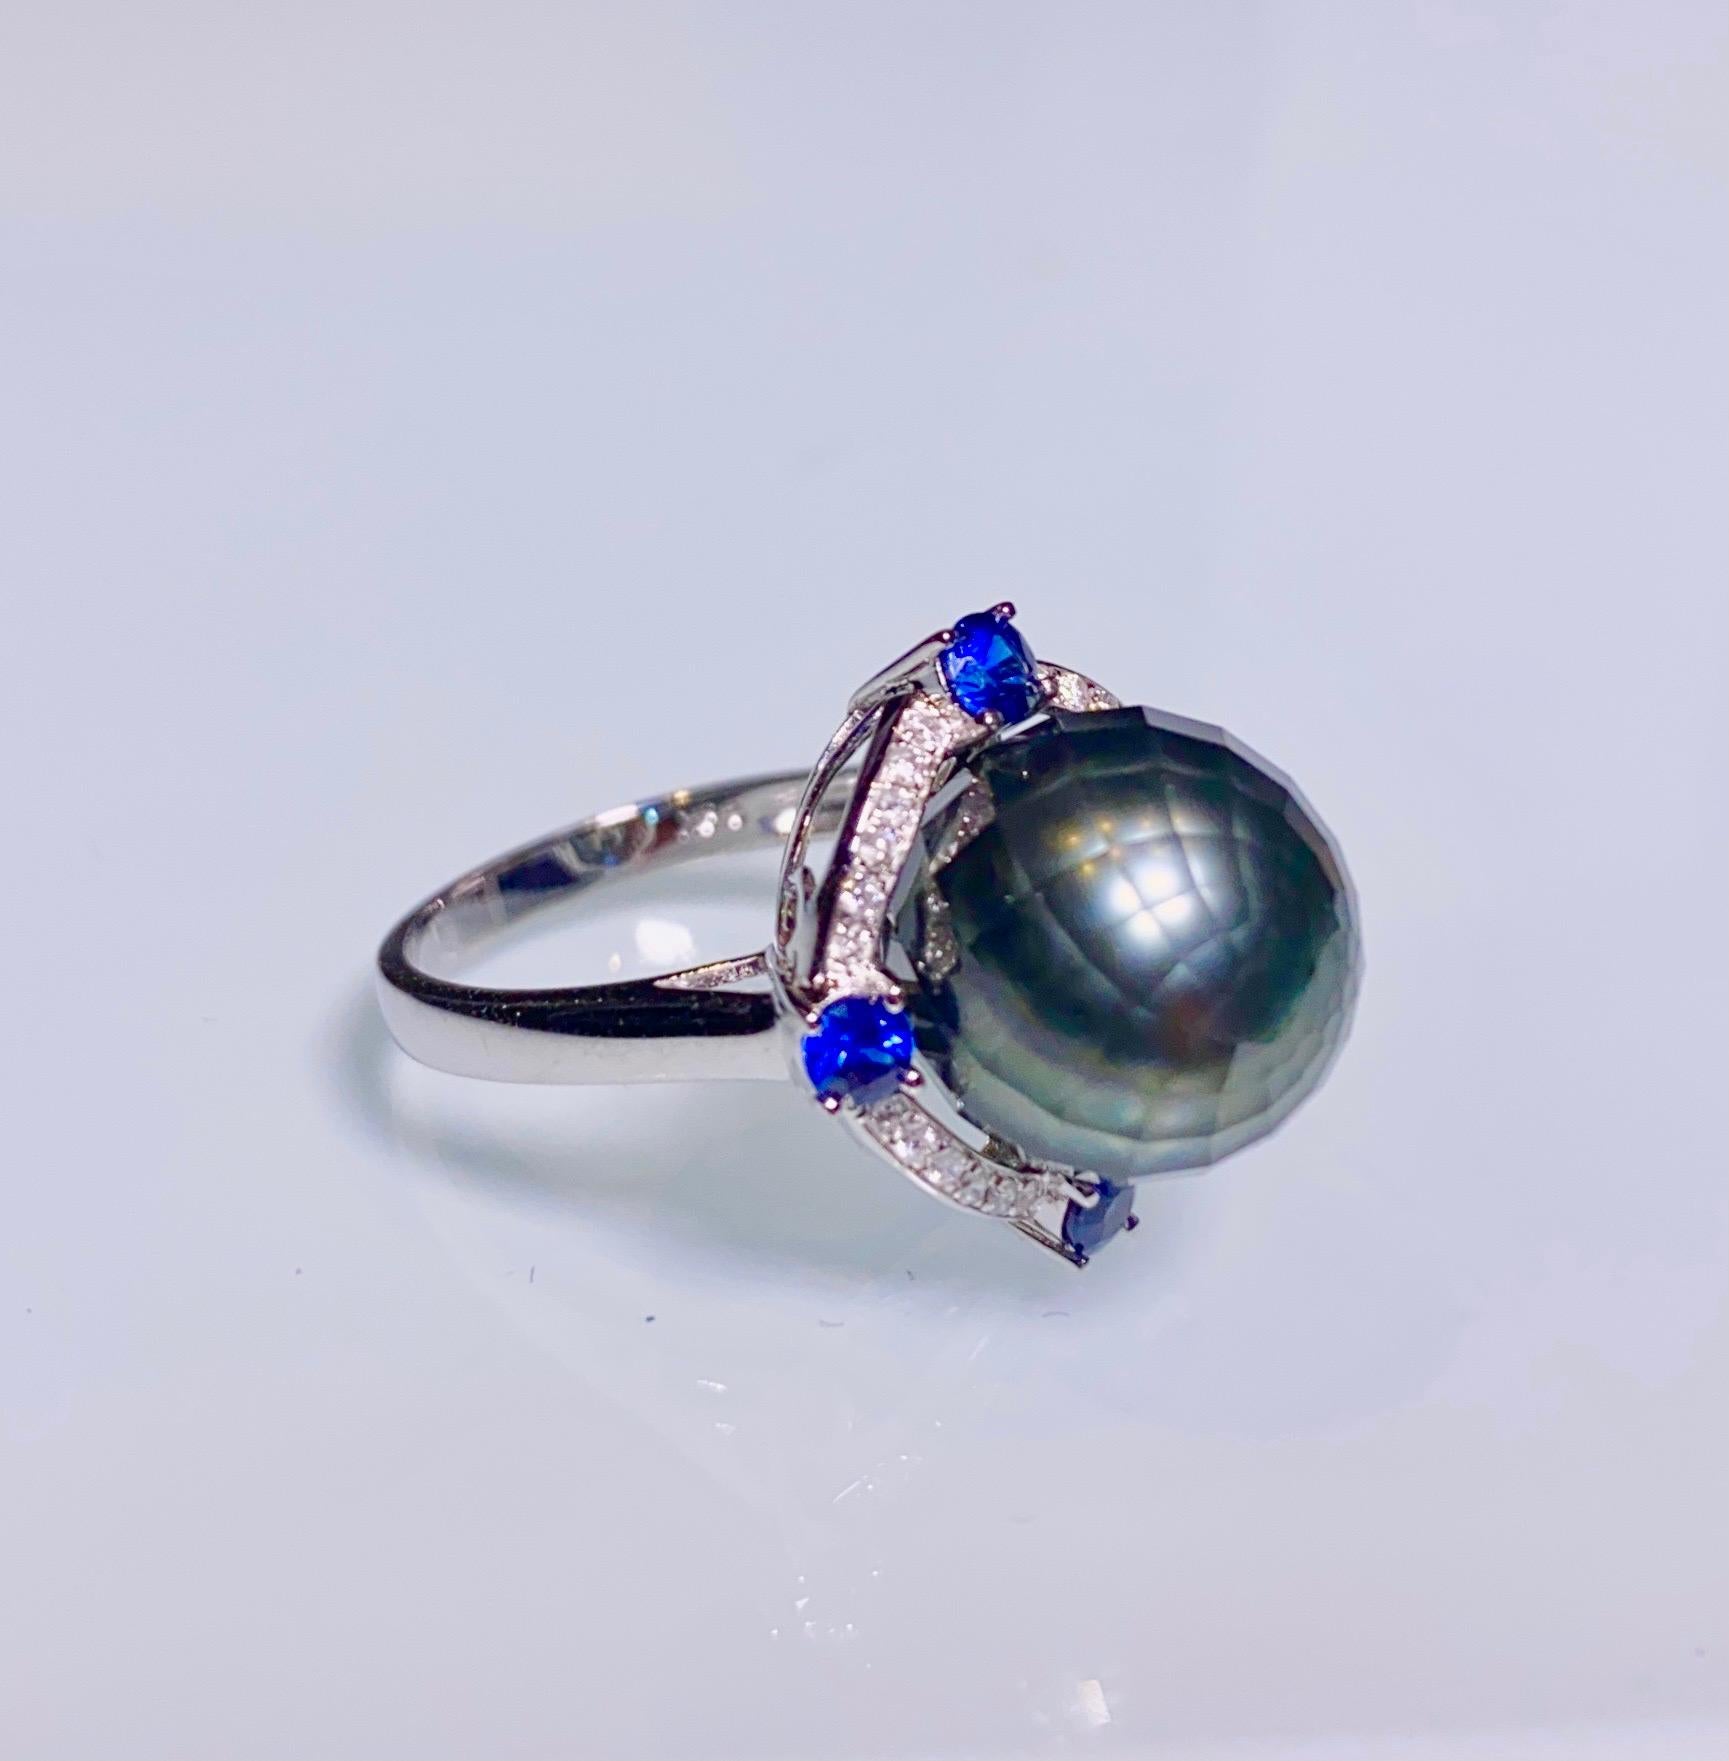 Ein 11,4 mm facettierter Ring aus schwarzer Tahiti-Perle, blauem Saphir und Diamant in 18k Weißgold
Es bestand aus einer runden, facettierten Tahiti-Perle
Blauer Saphir
Natürlicher Diamant 

US RIng Größe ist 6 1/2, der Innendurchmesser des Ringes